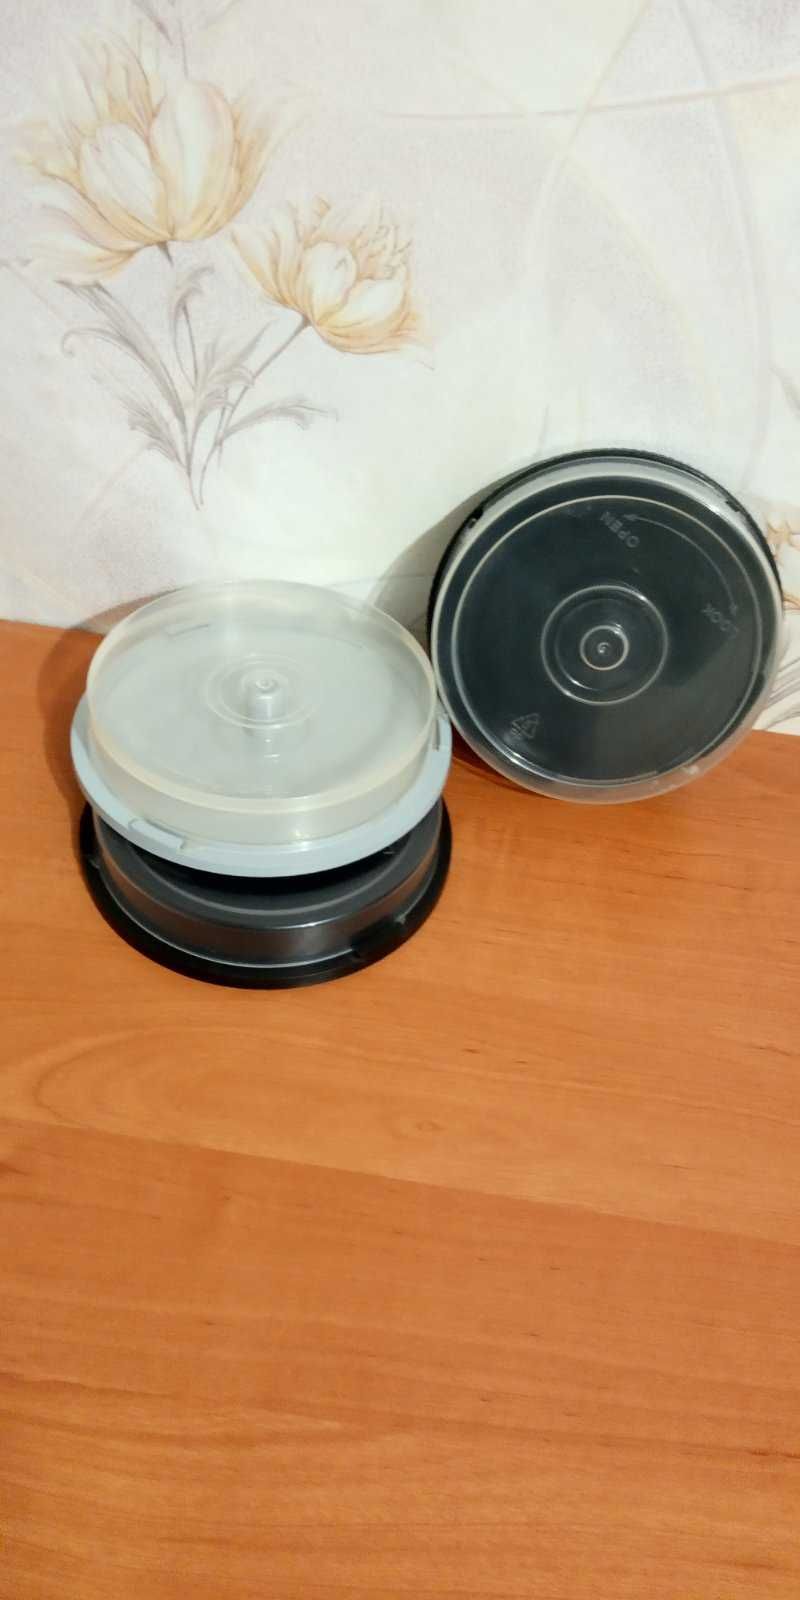 Кейк под диски на 10 шт CD/DVD дисков/ 3 бокса - 25 грн